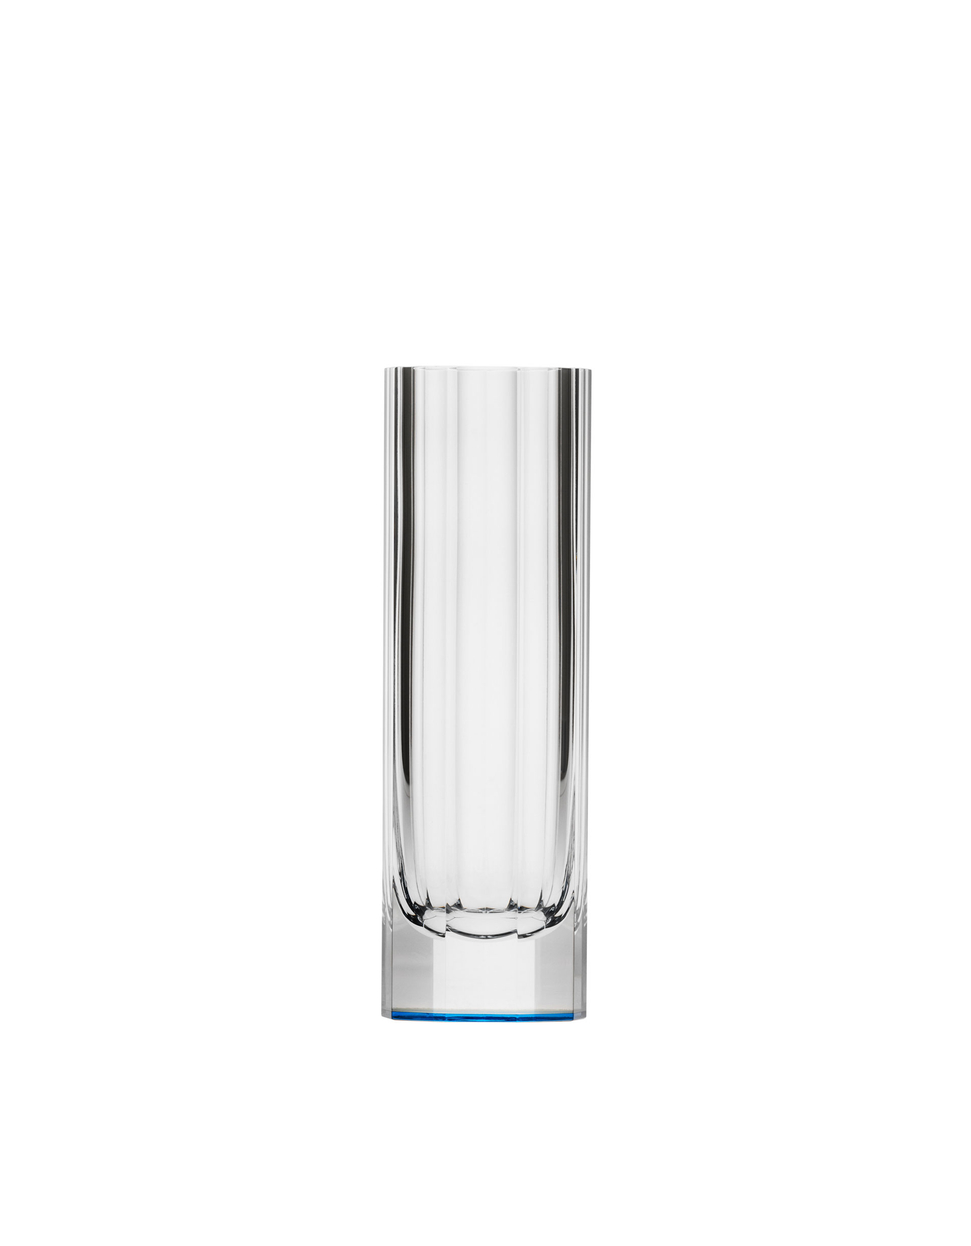 Daisy vase, 18 cm – aquamarine